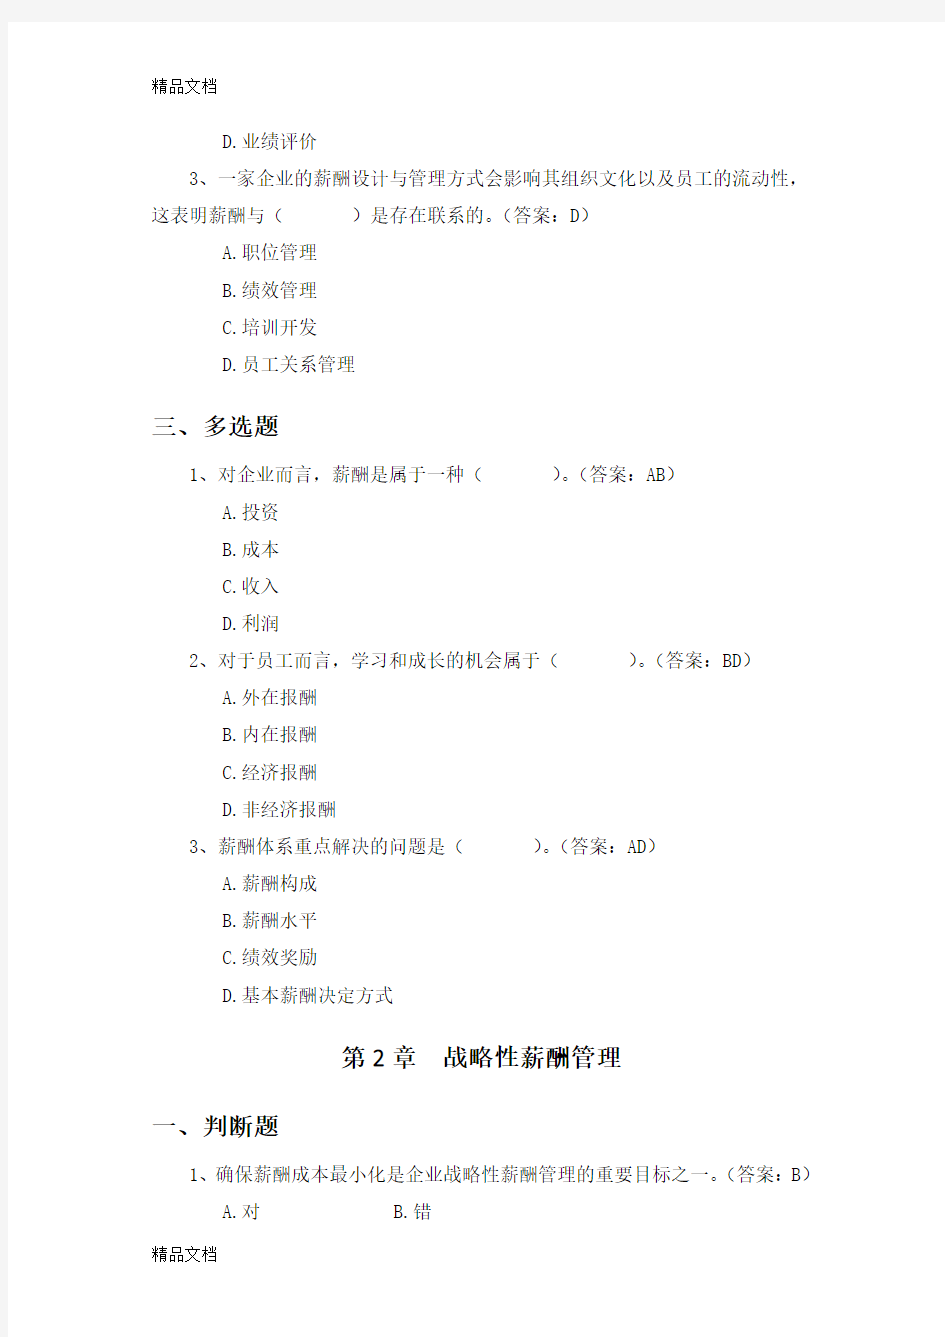 刘昕教授薪酬管理第5版习题教学文案